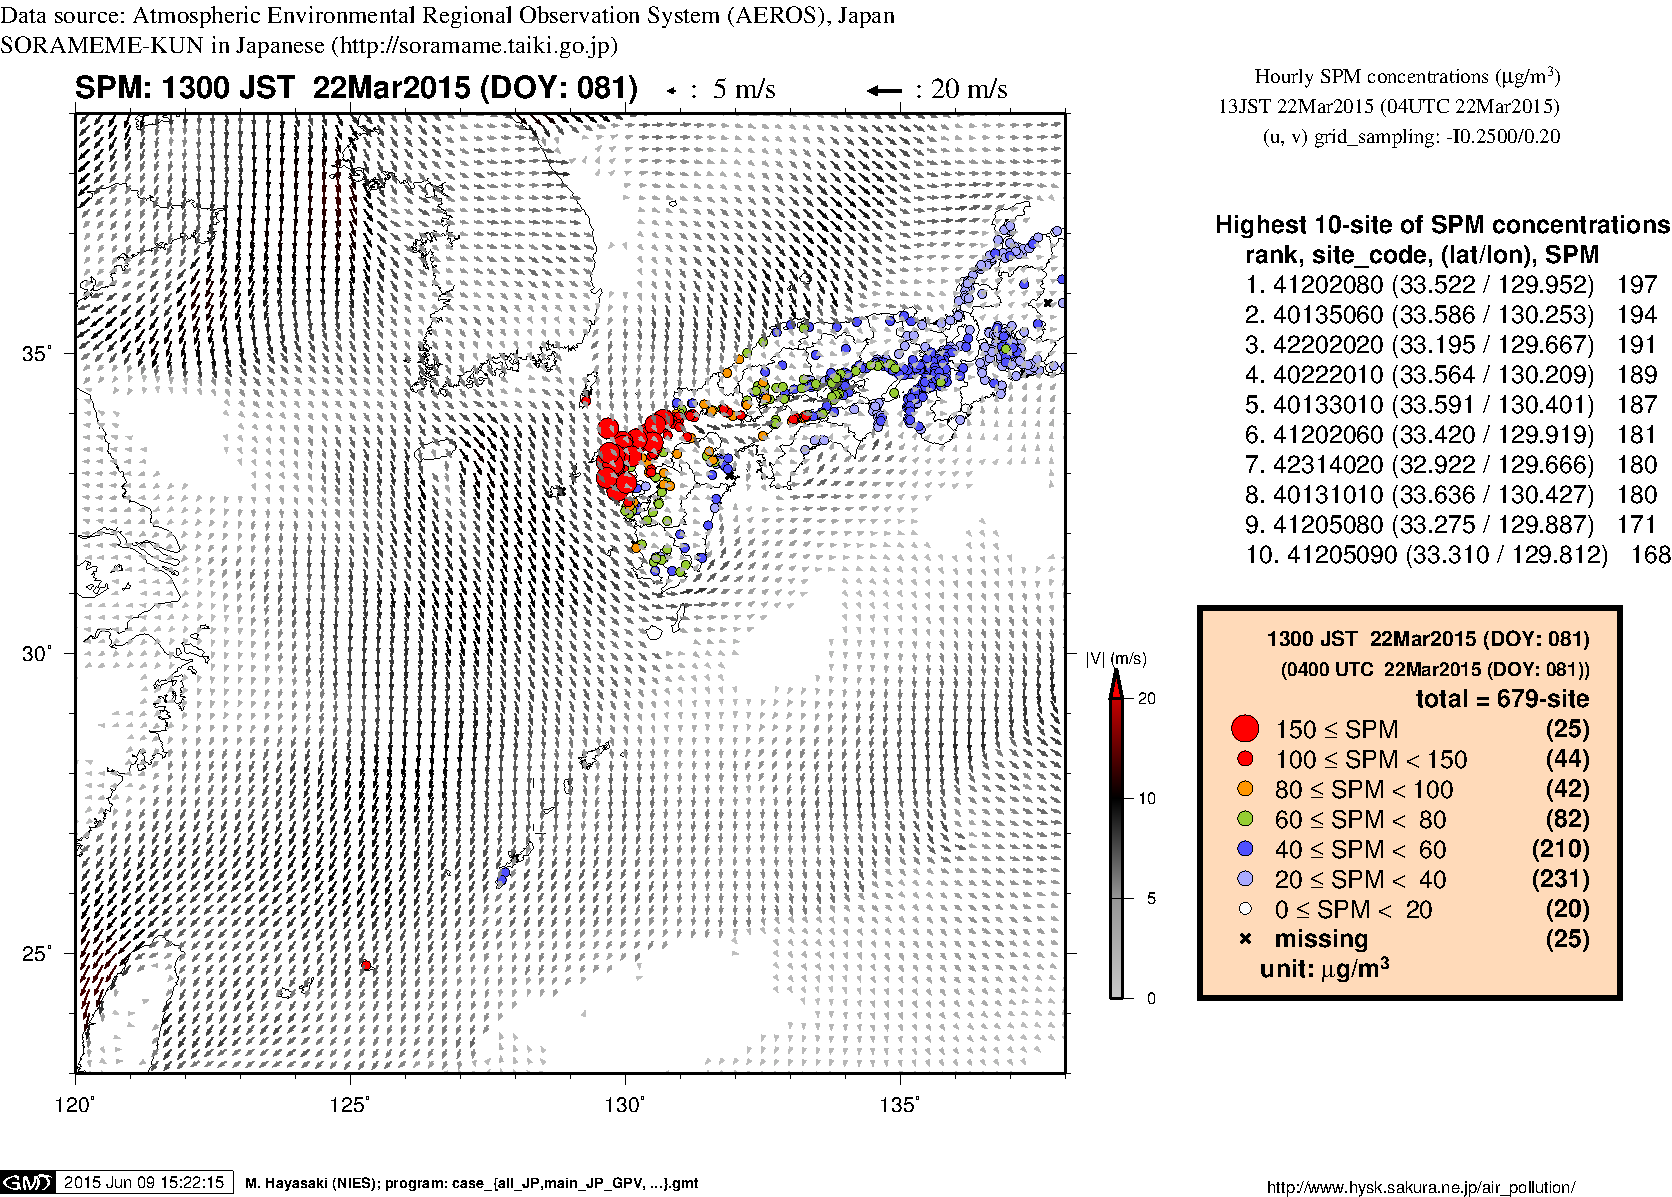 SPM concentration in western Japan (13JST 22Mar2015)